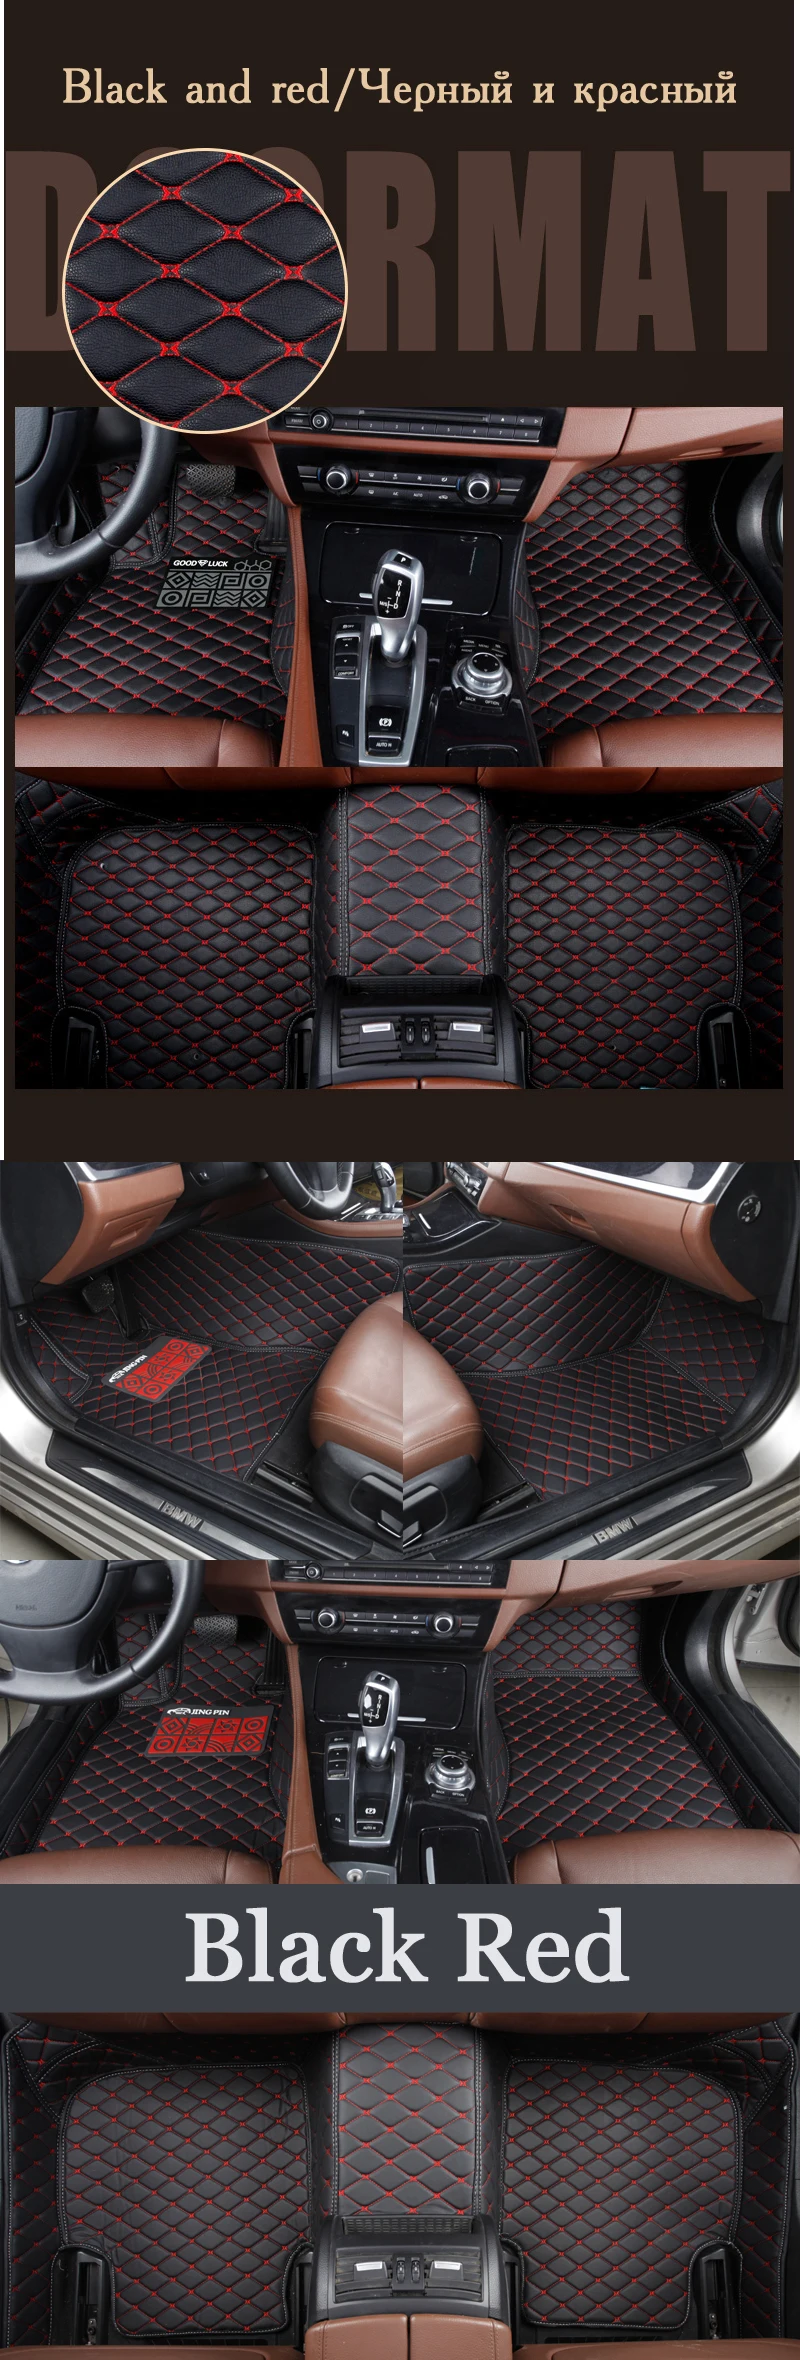 Пользовательские автомобильные коврики для Suzuki все модели Jimny grand vitara Kizashi Swift SX4 Wagon R палитры автомобильный Стильный коврик для пола